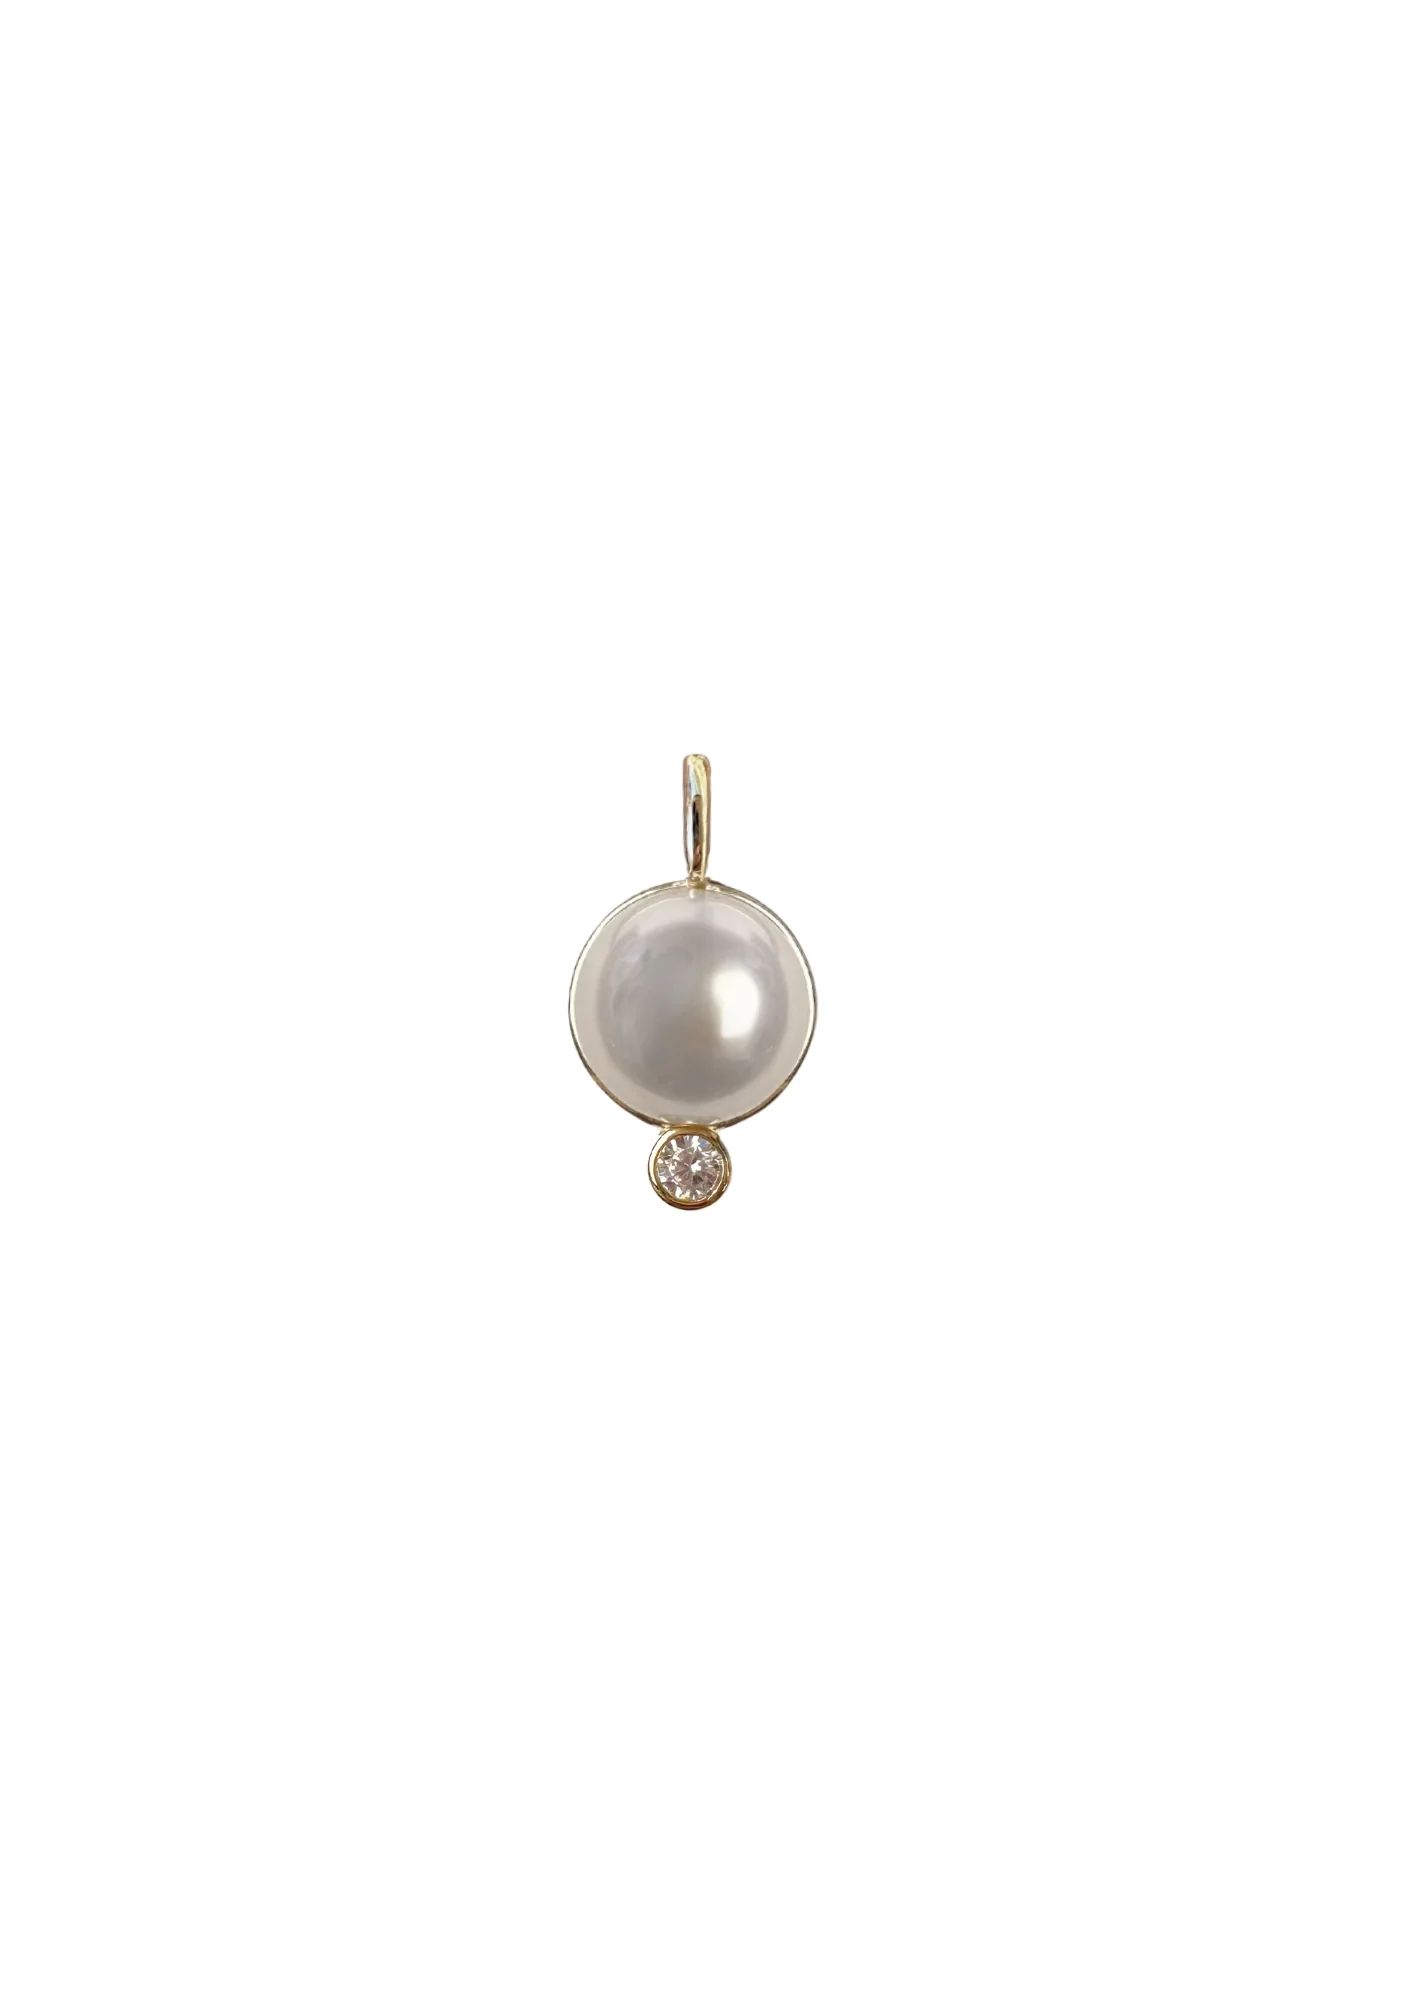 Pearl Drop Charm | Nicola Bathie Jewelry